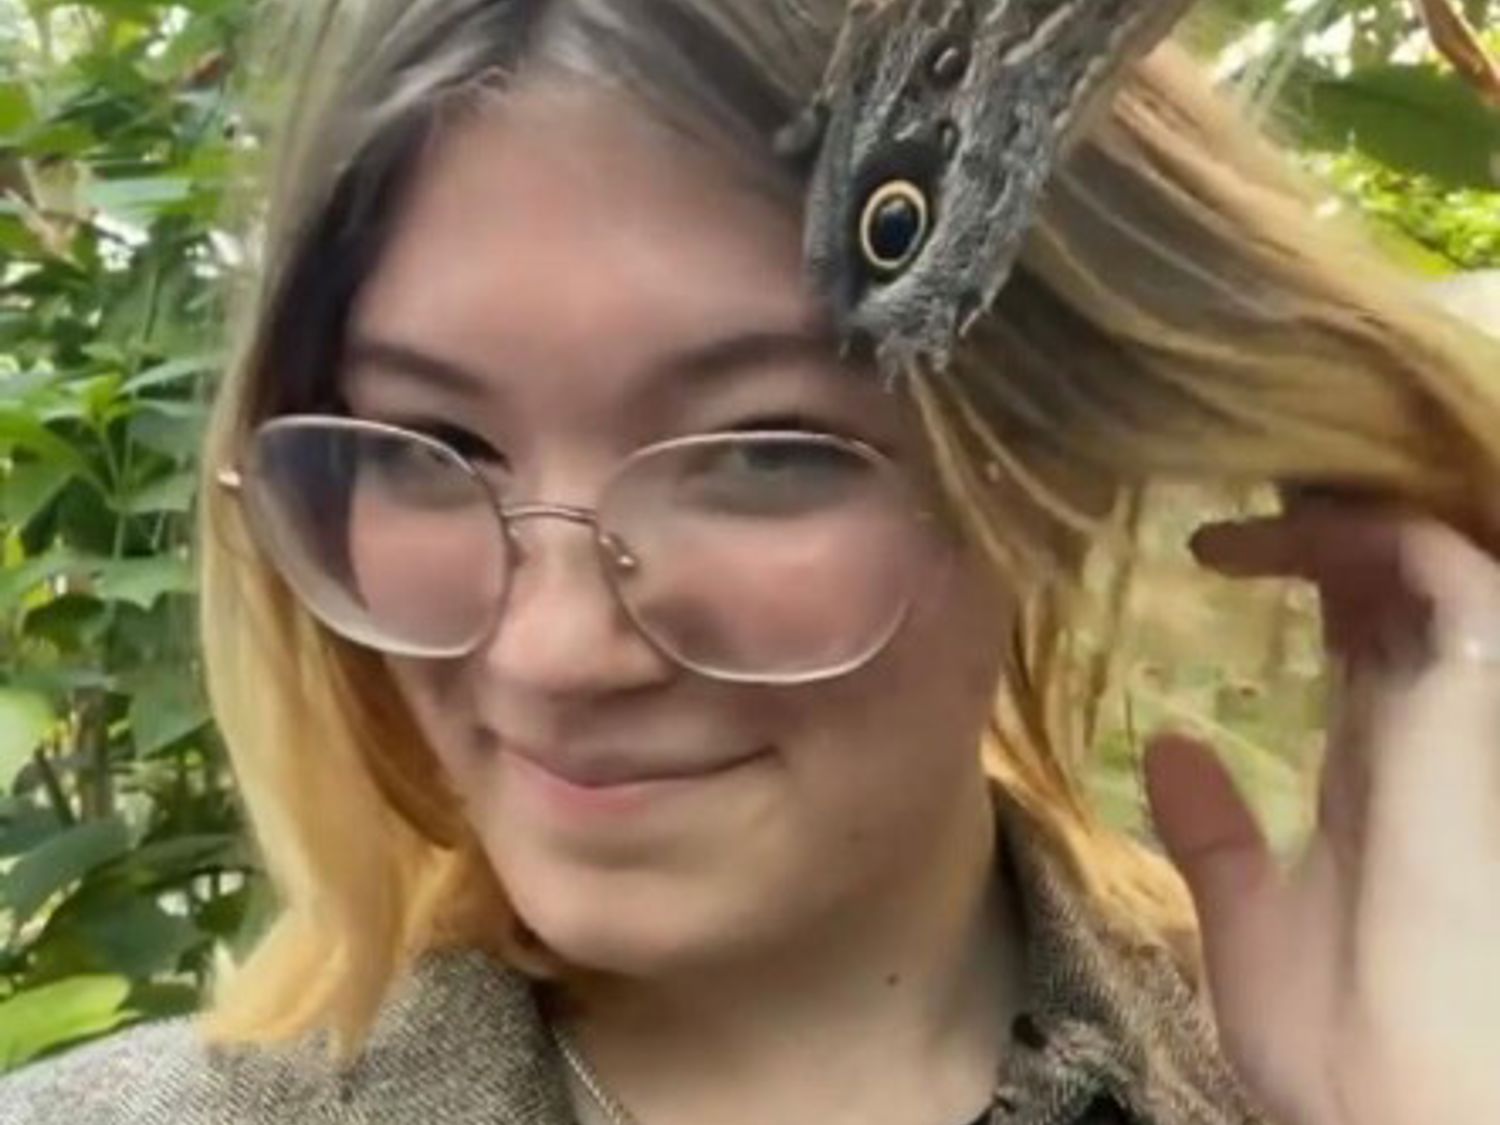 Meisje met vlinder in het haar